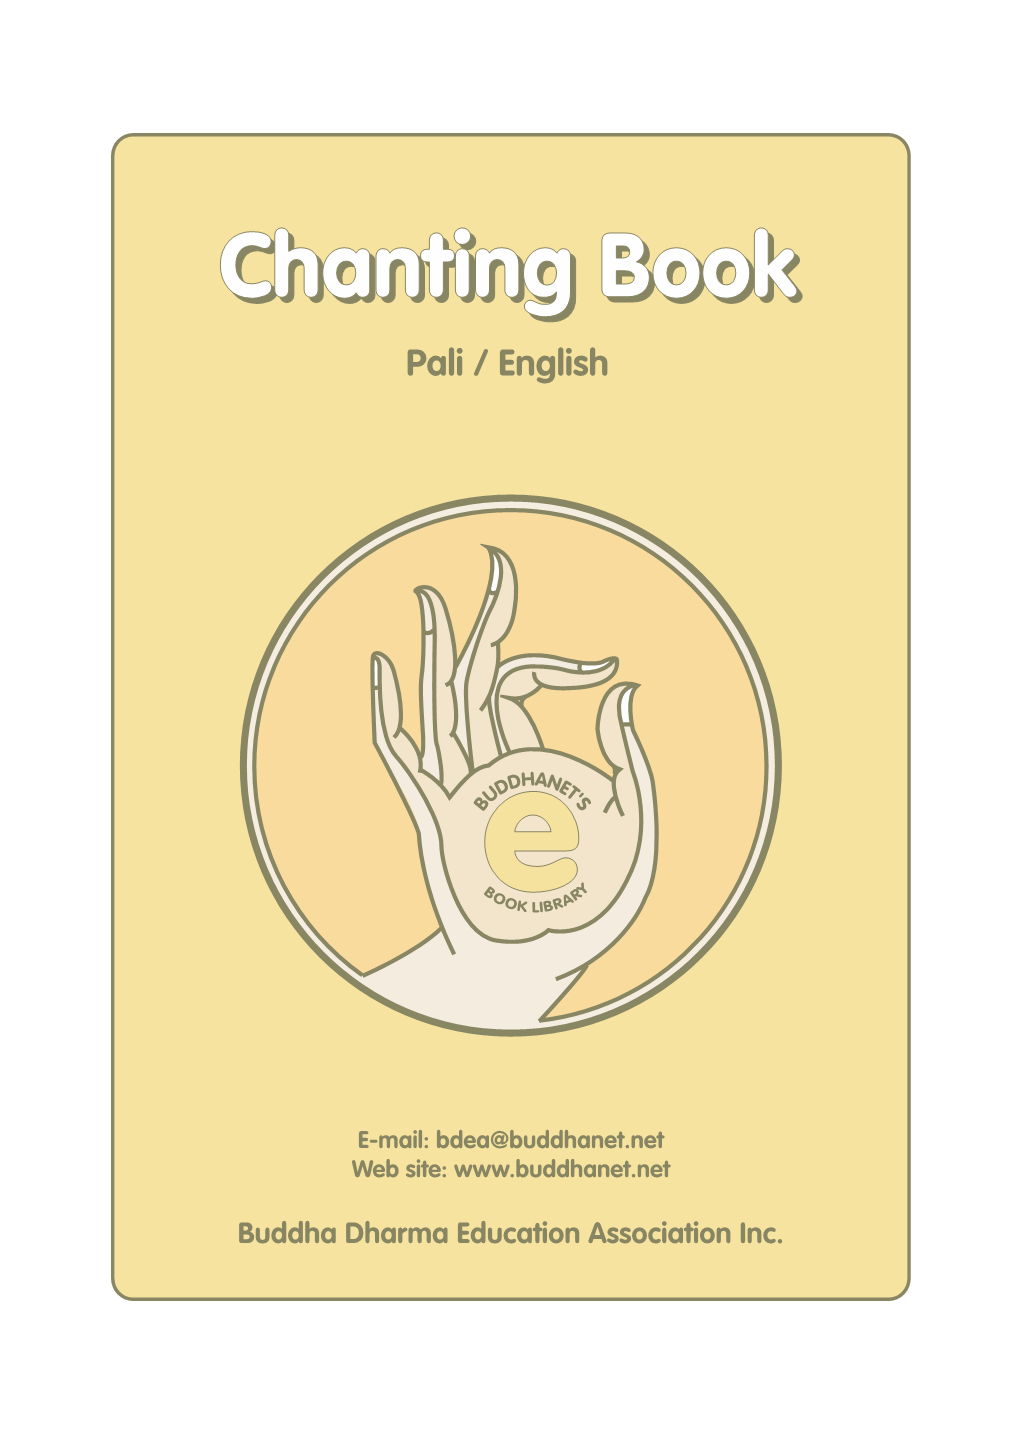 Chanting Bookbook Pali / English